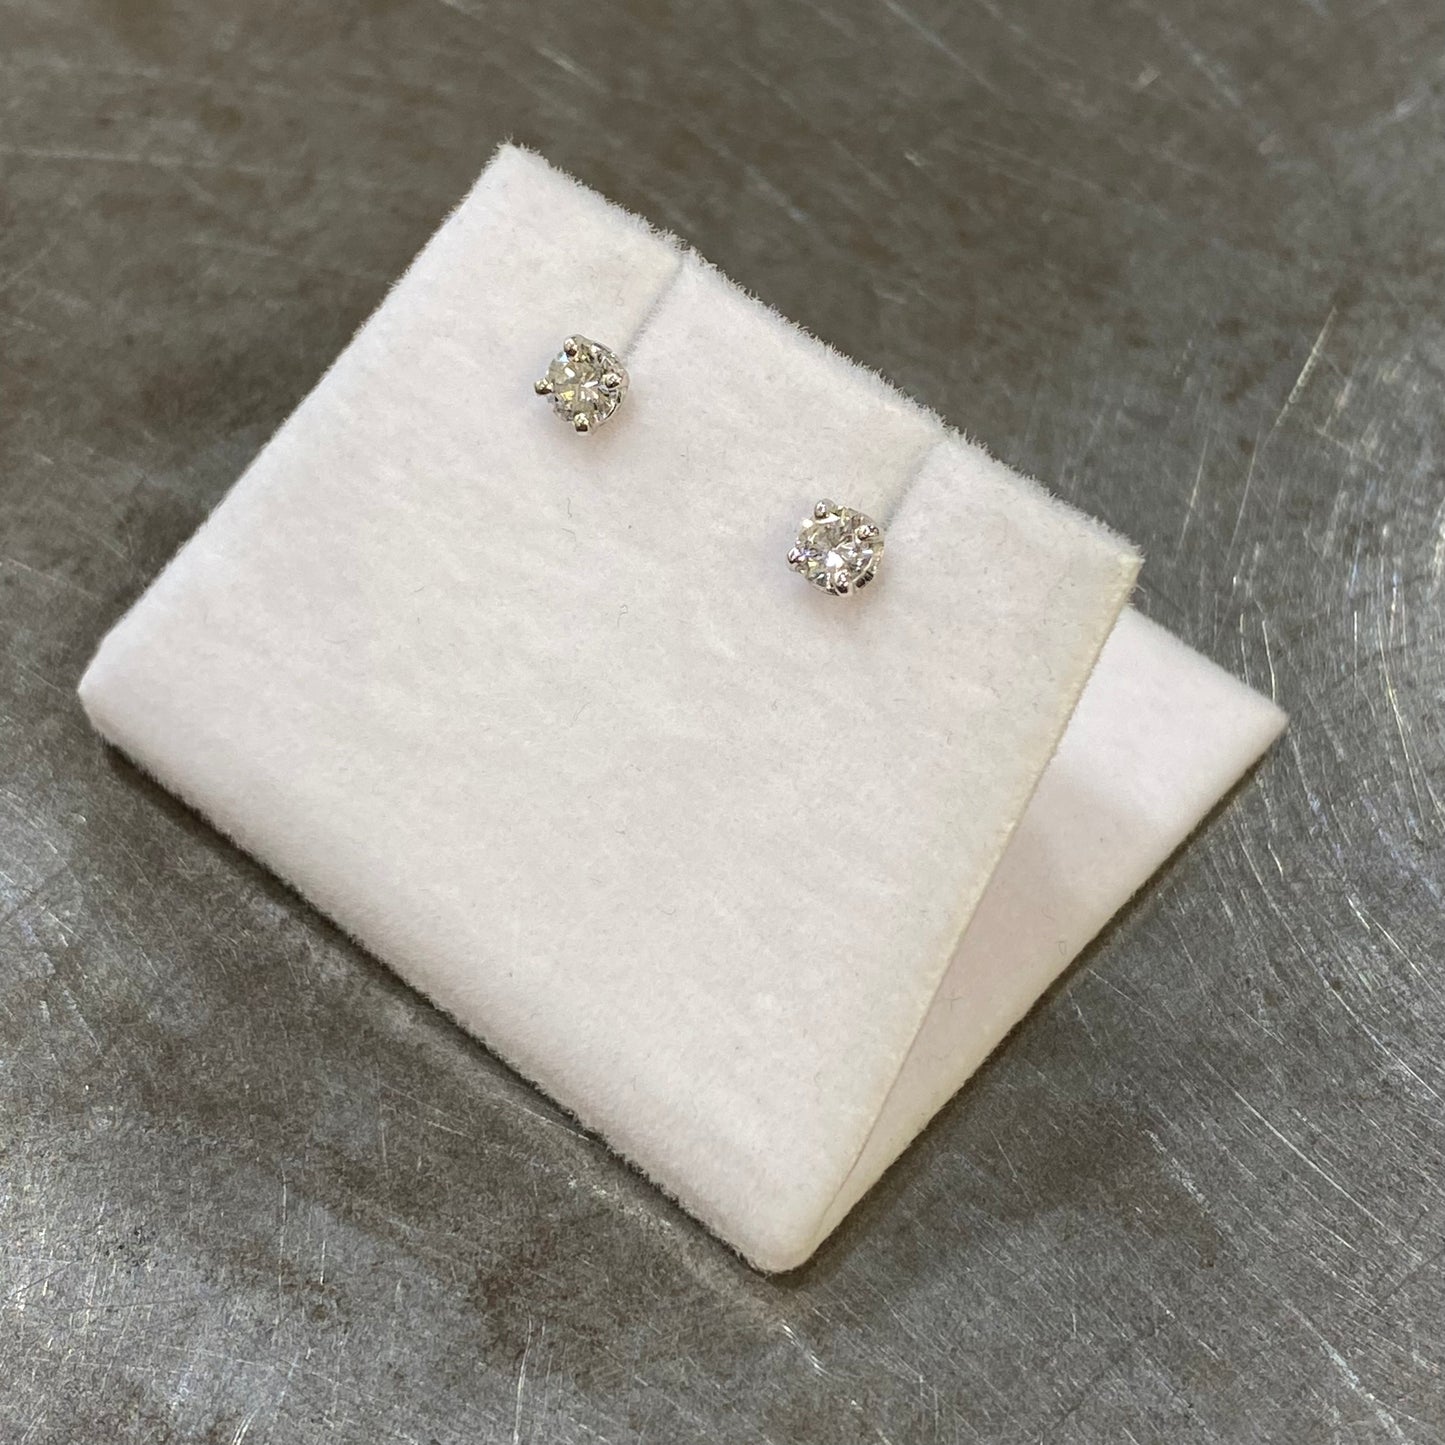 Boucles D'oreilles Puces Solitaire - Or Blanc 750 & Diamants